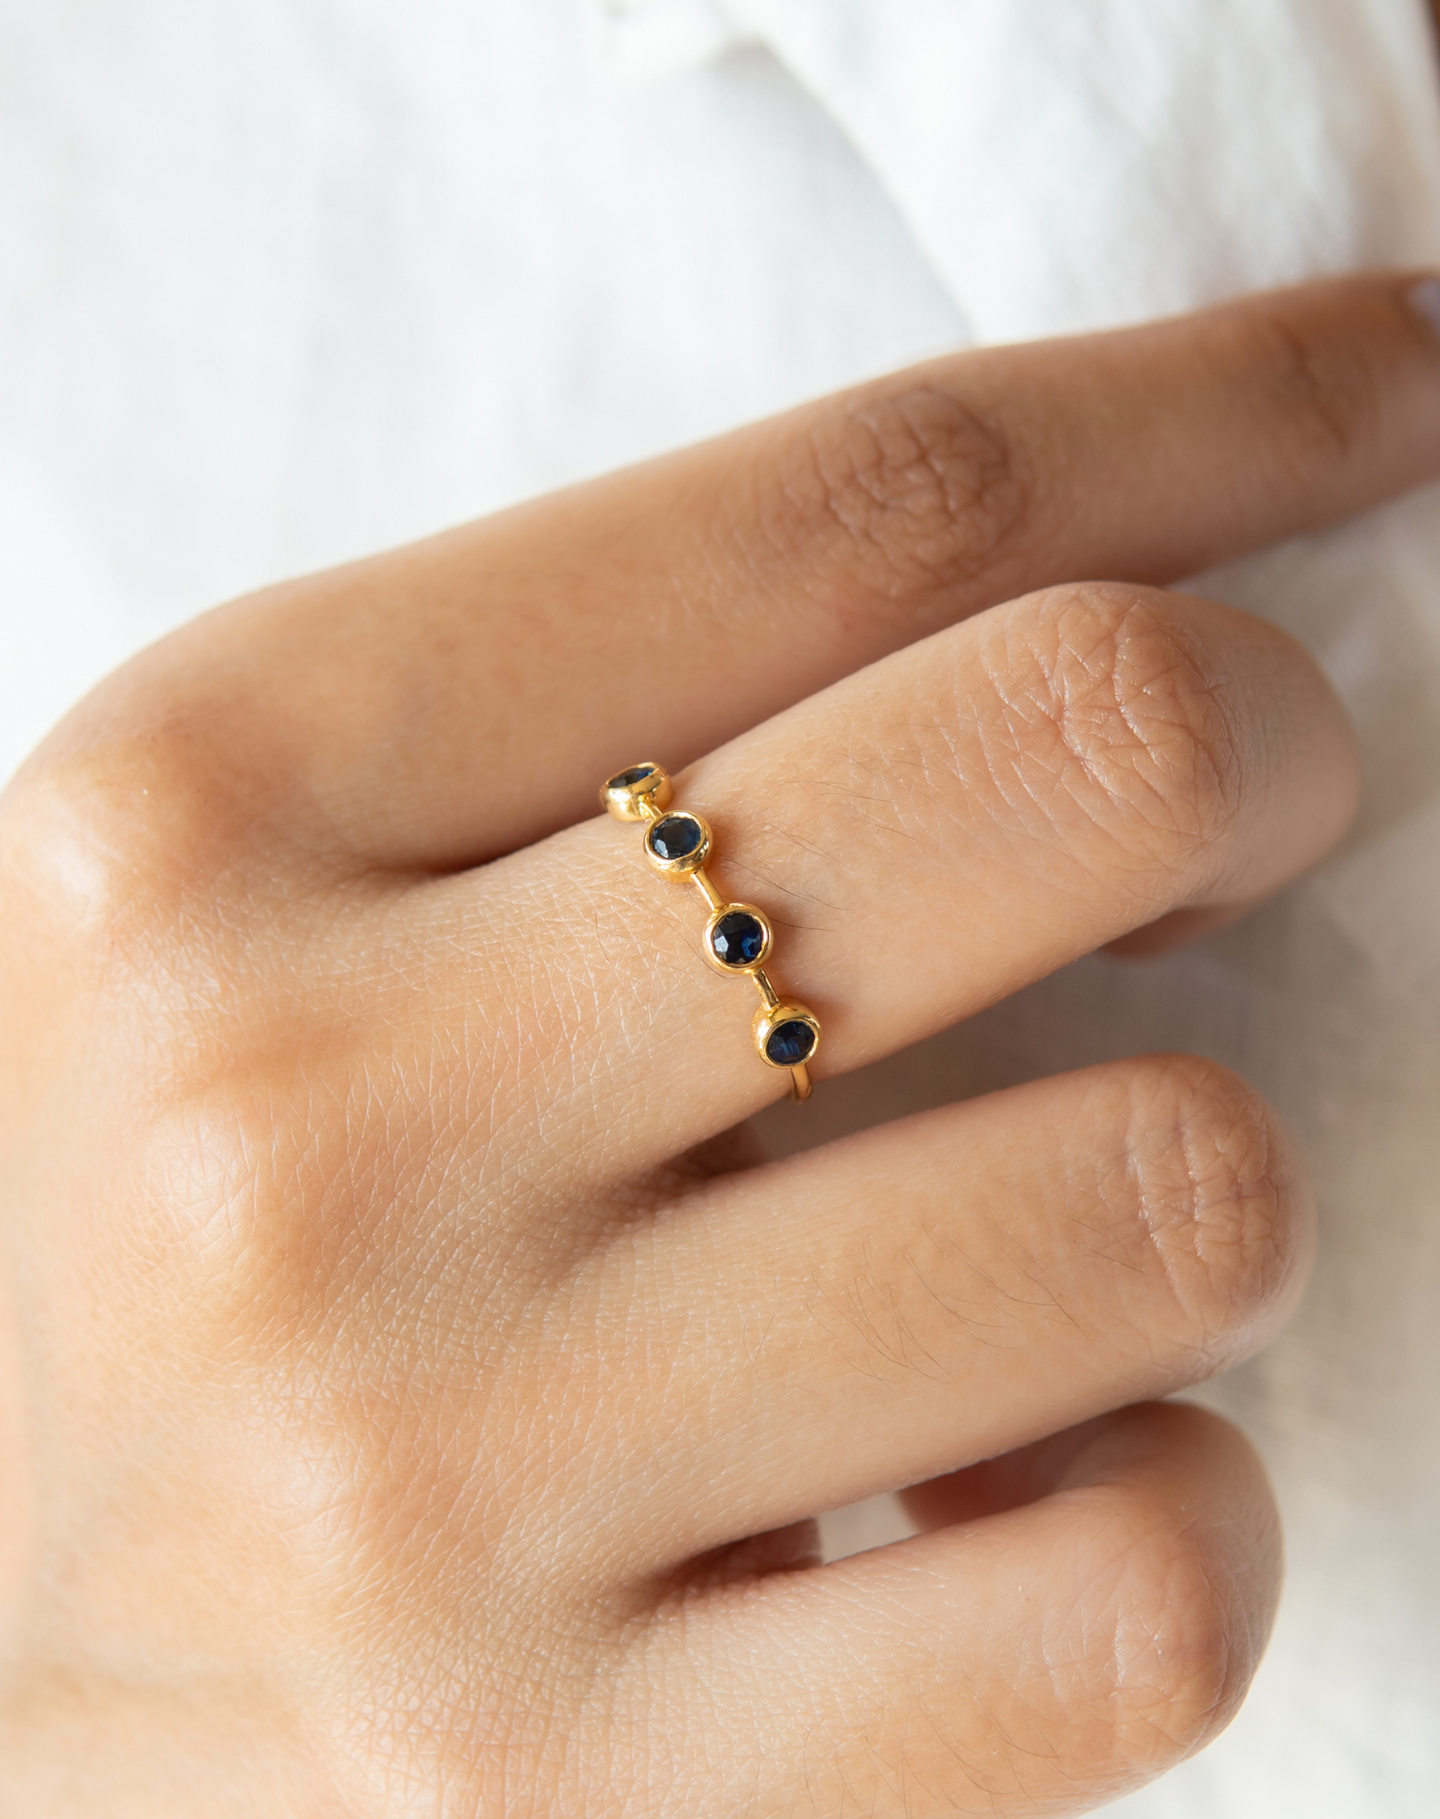 कन्या राशि के लिए पन्ना रत्न की अंगूठी के फायदे और धरण विधि - Emerald Stone  for Virgo People - Jeewan Mantra